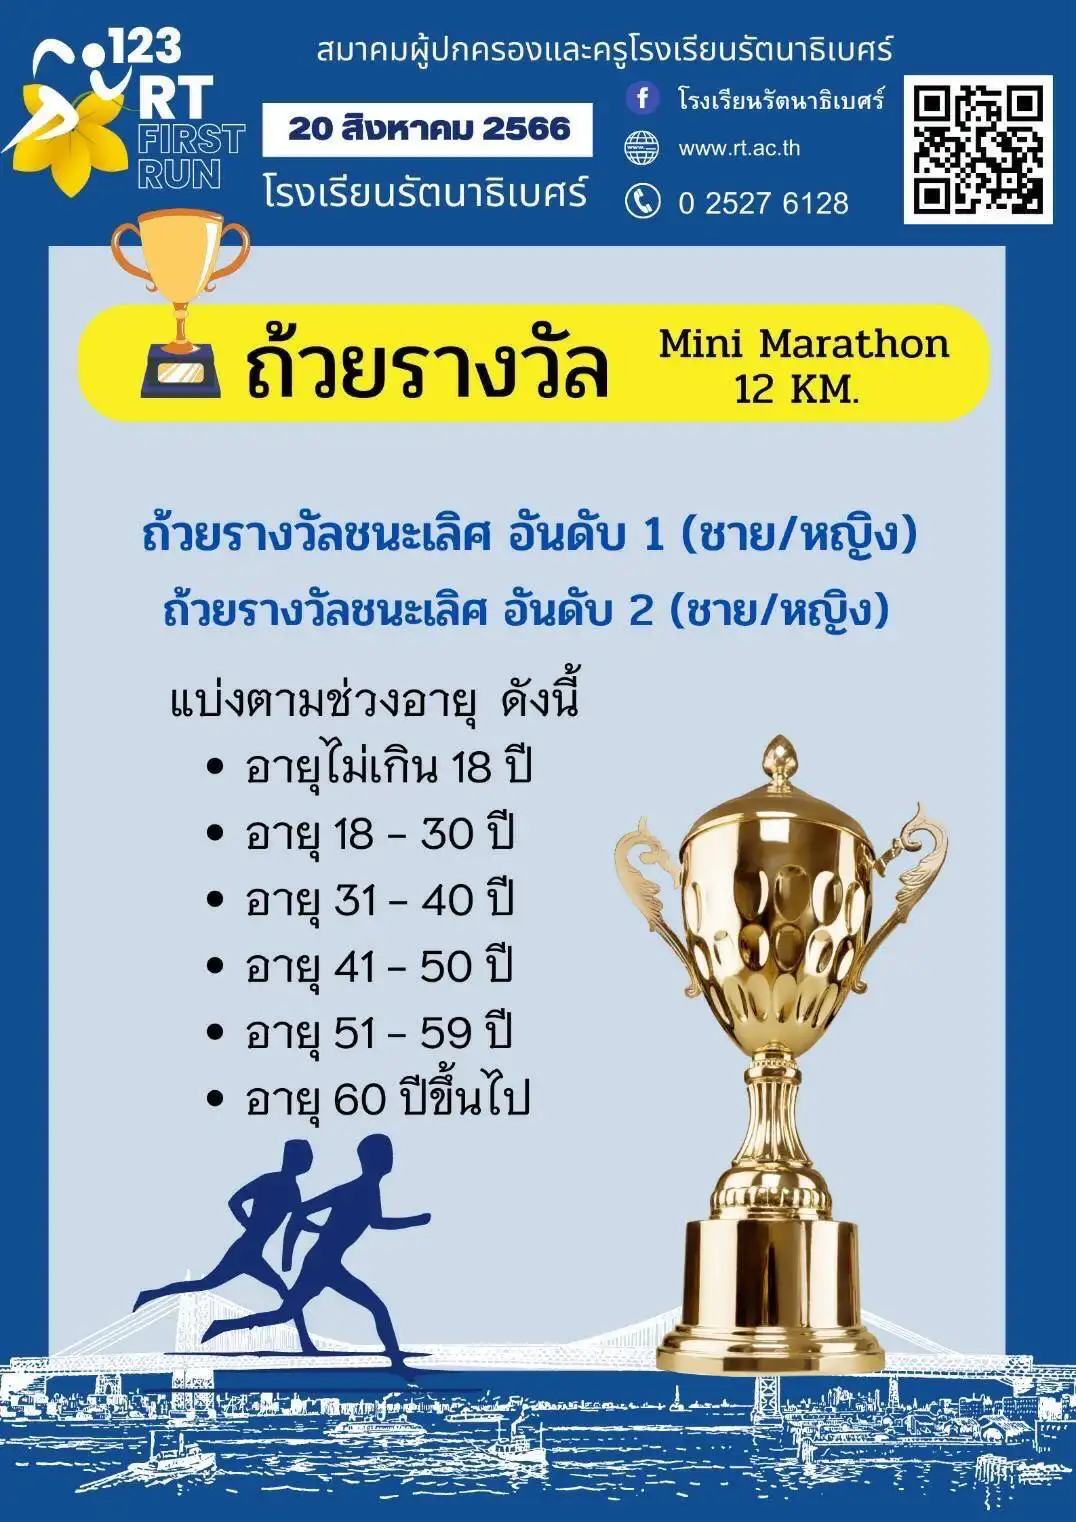 งานวิ่ง รร.รัตนาธิเบศร์ นนทบุรี  123 RT First Run 20 สิงหาคม 2566 HealthServ